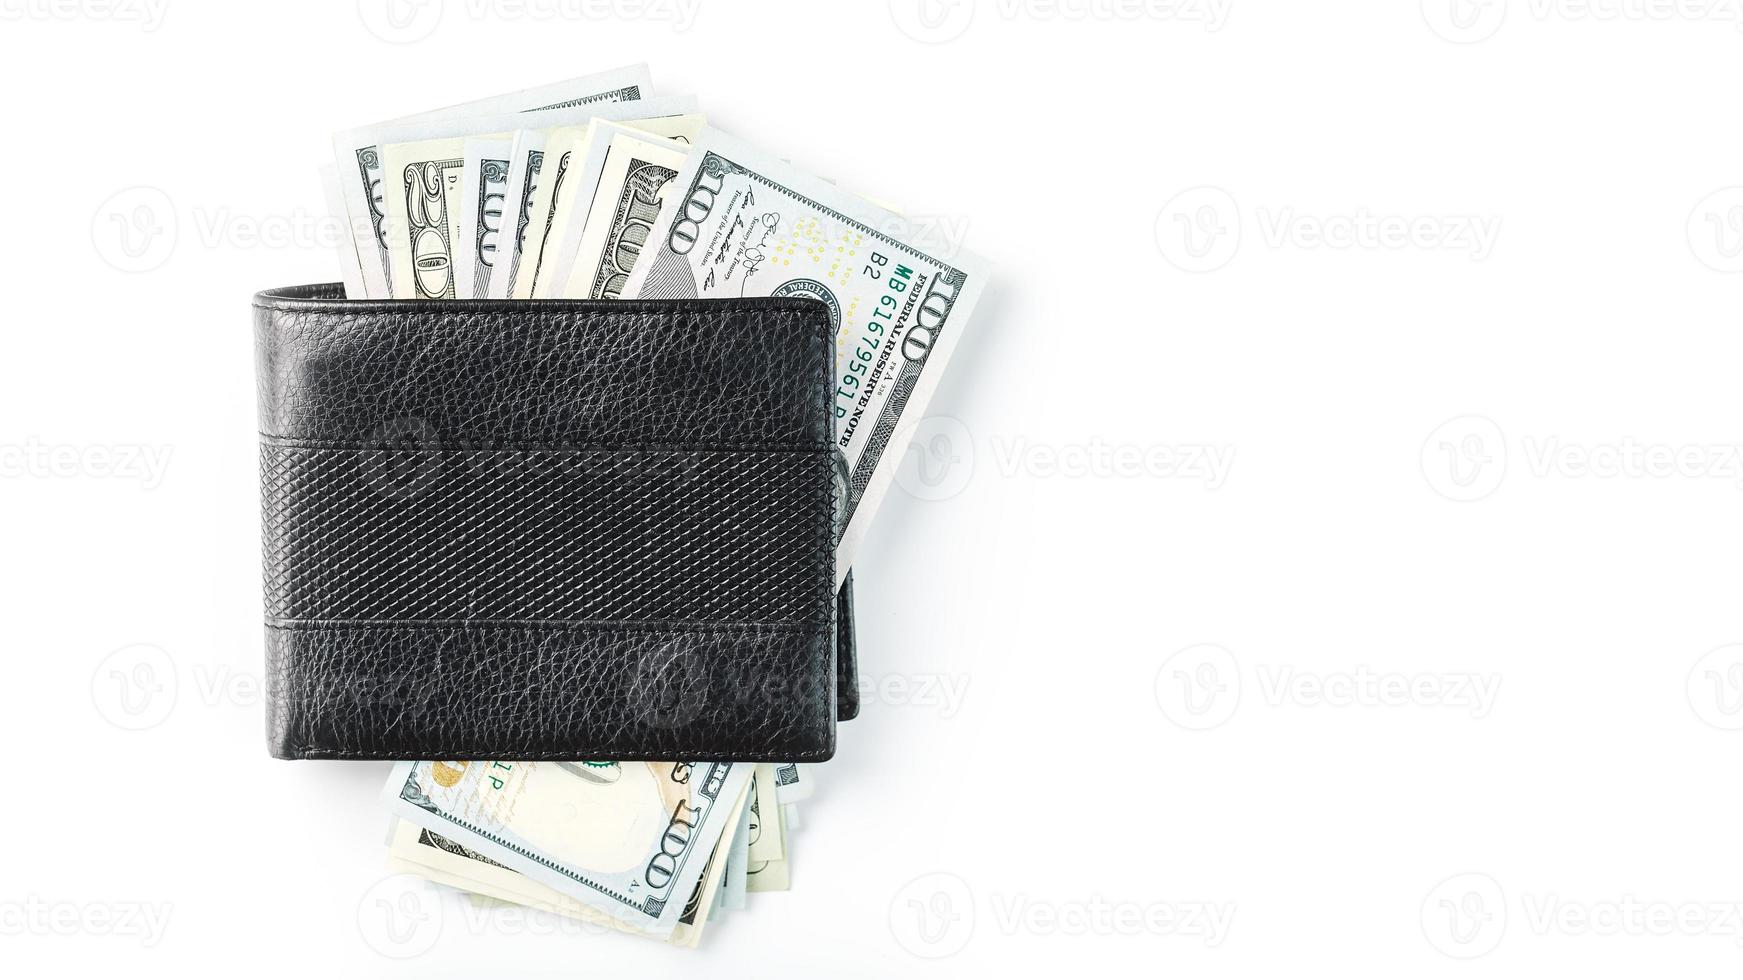 billetera negra con dólares de cuero genuino en un fondo blanco aislado. foto